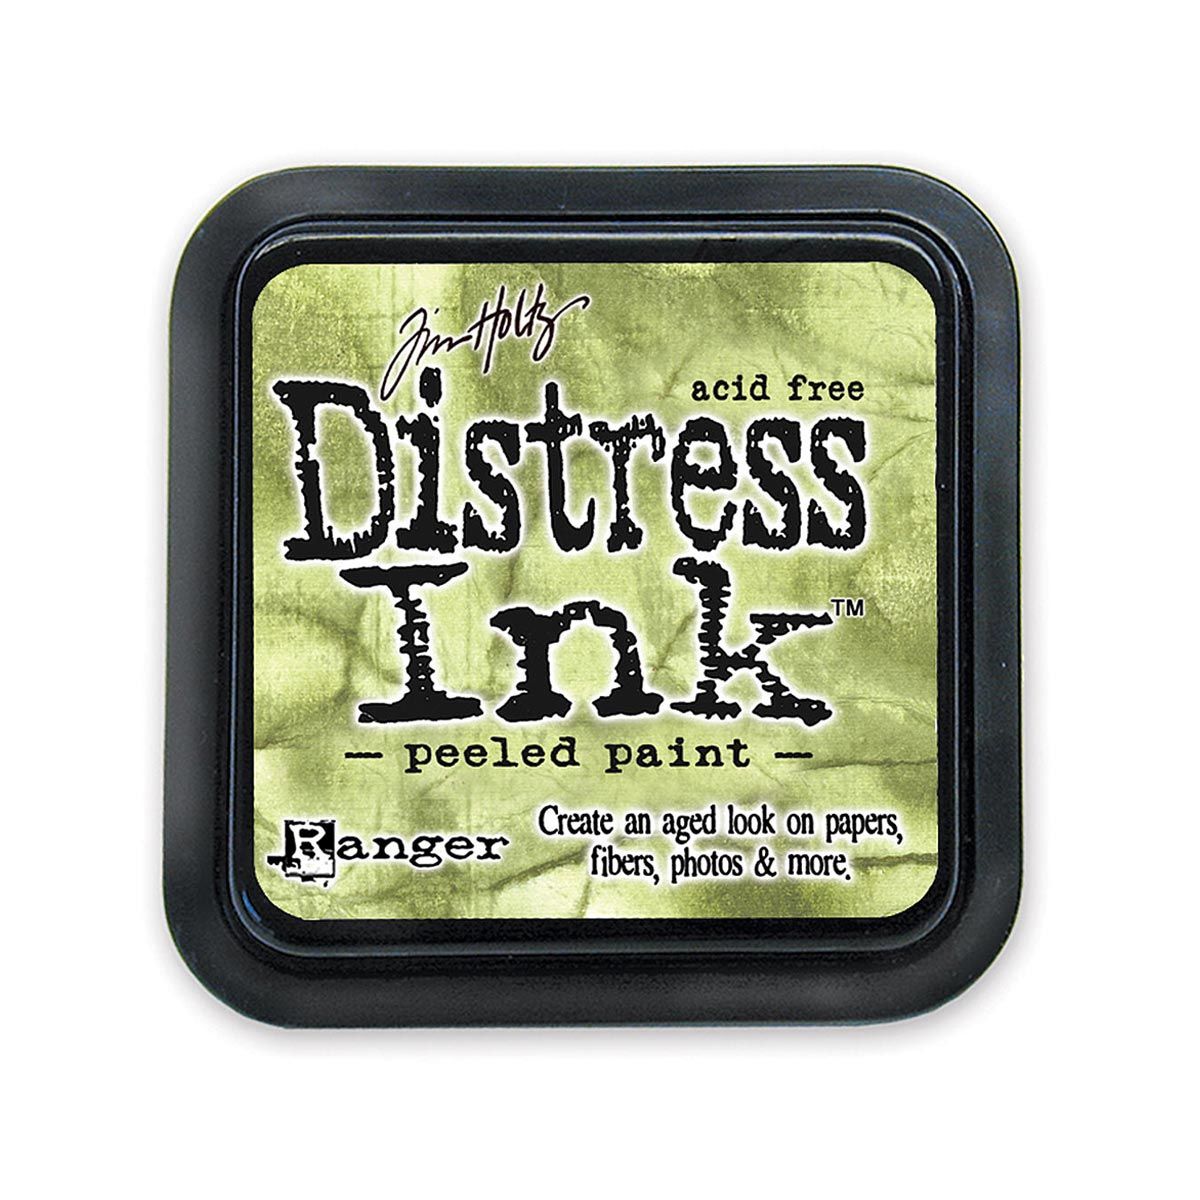 Tim Holtz Mini Distress Ink Pad Peeled Paint 1x1 inch